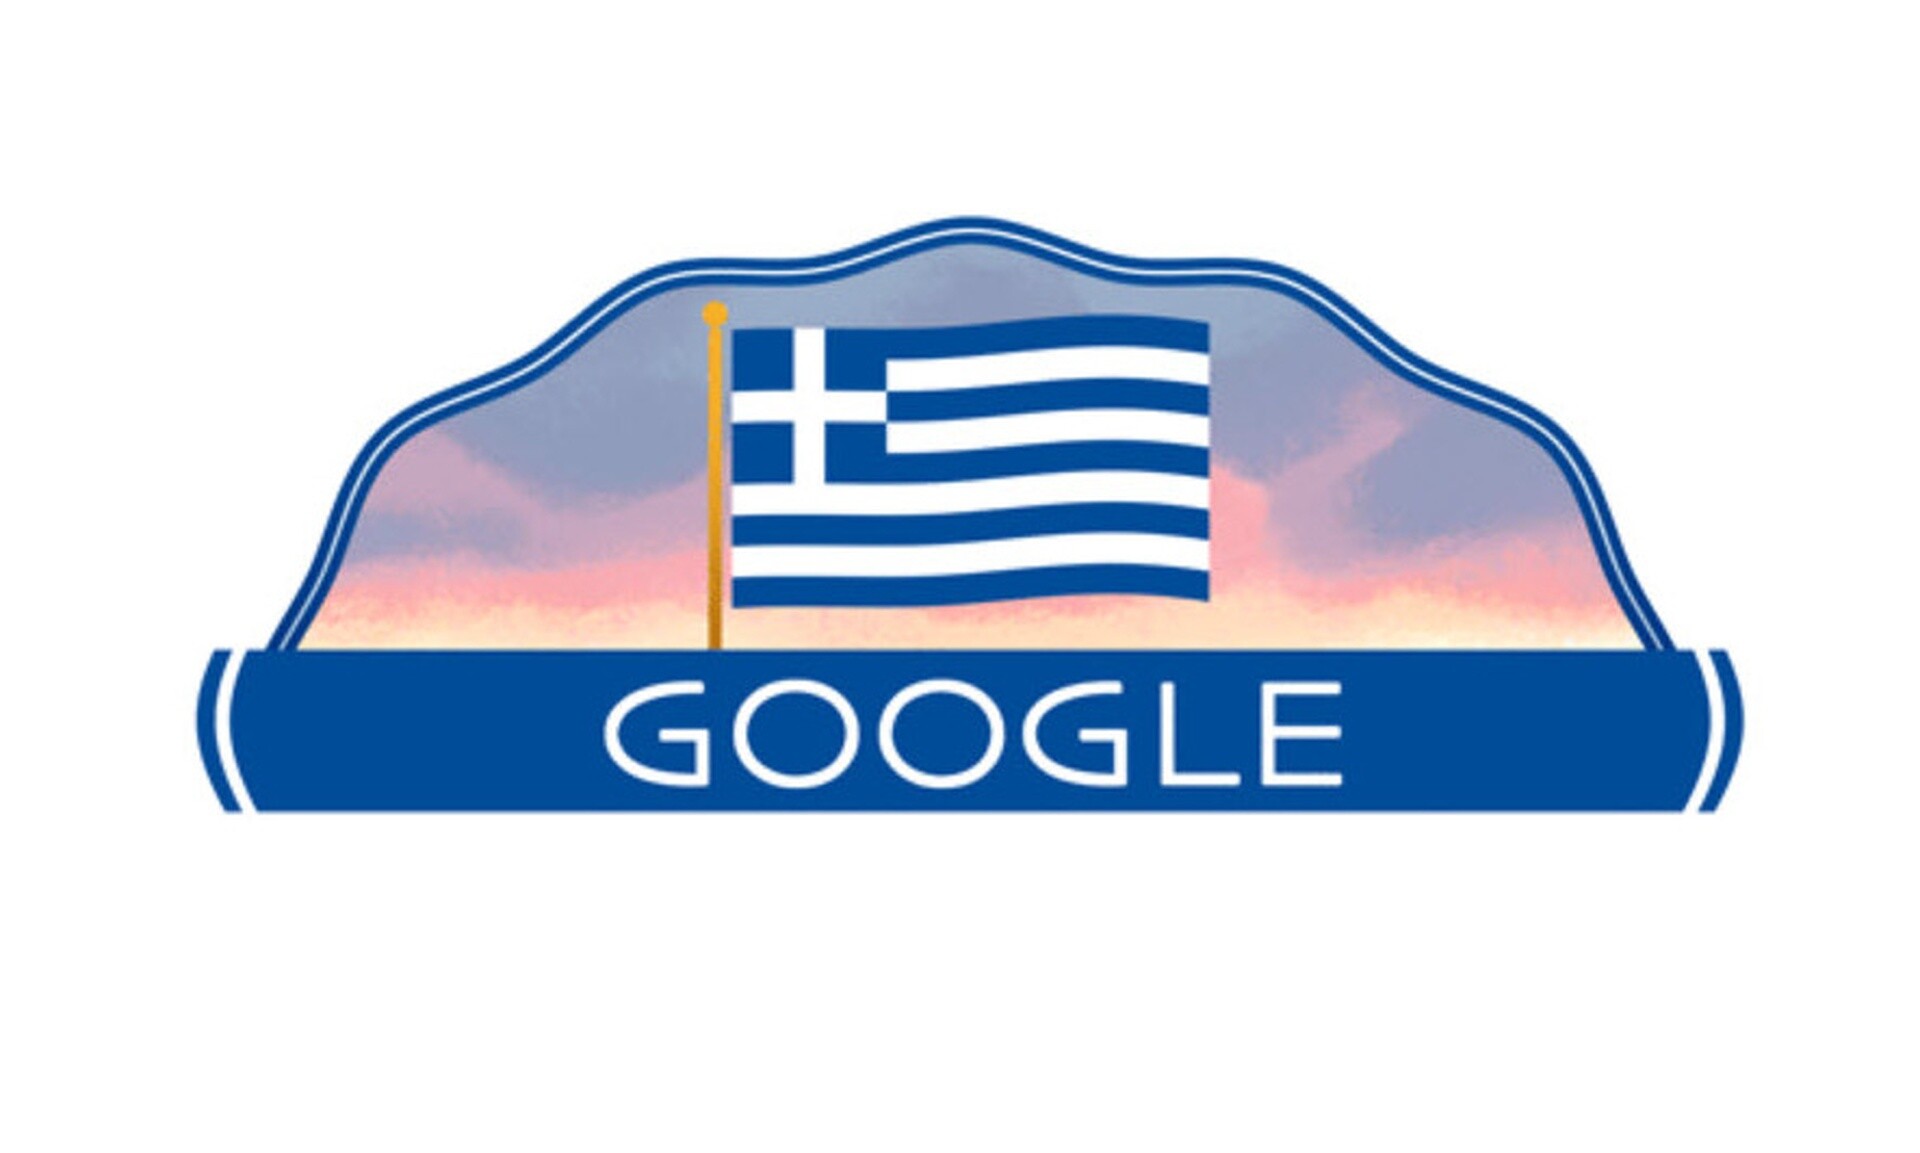 25η Μαρτίου: Η Google με ένα doodle την Εθνική επέτειο της Ελληνικής Επανάστασης του 1821